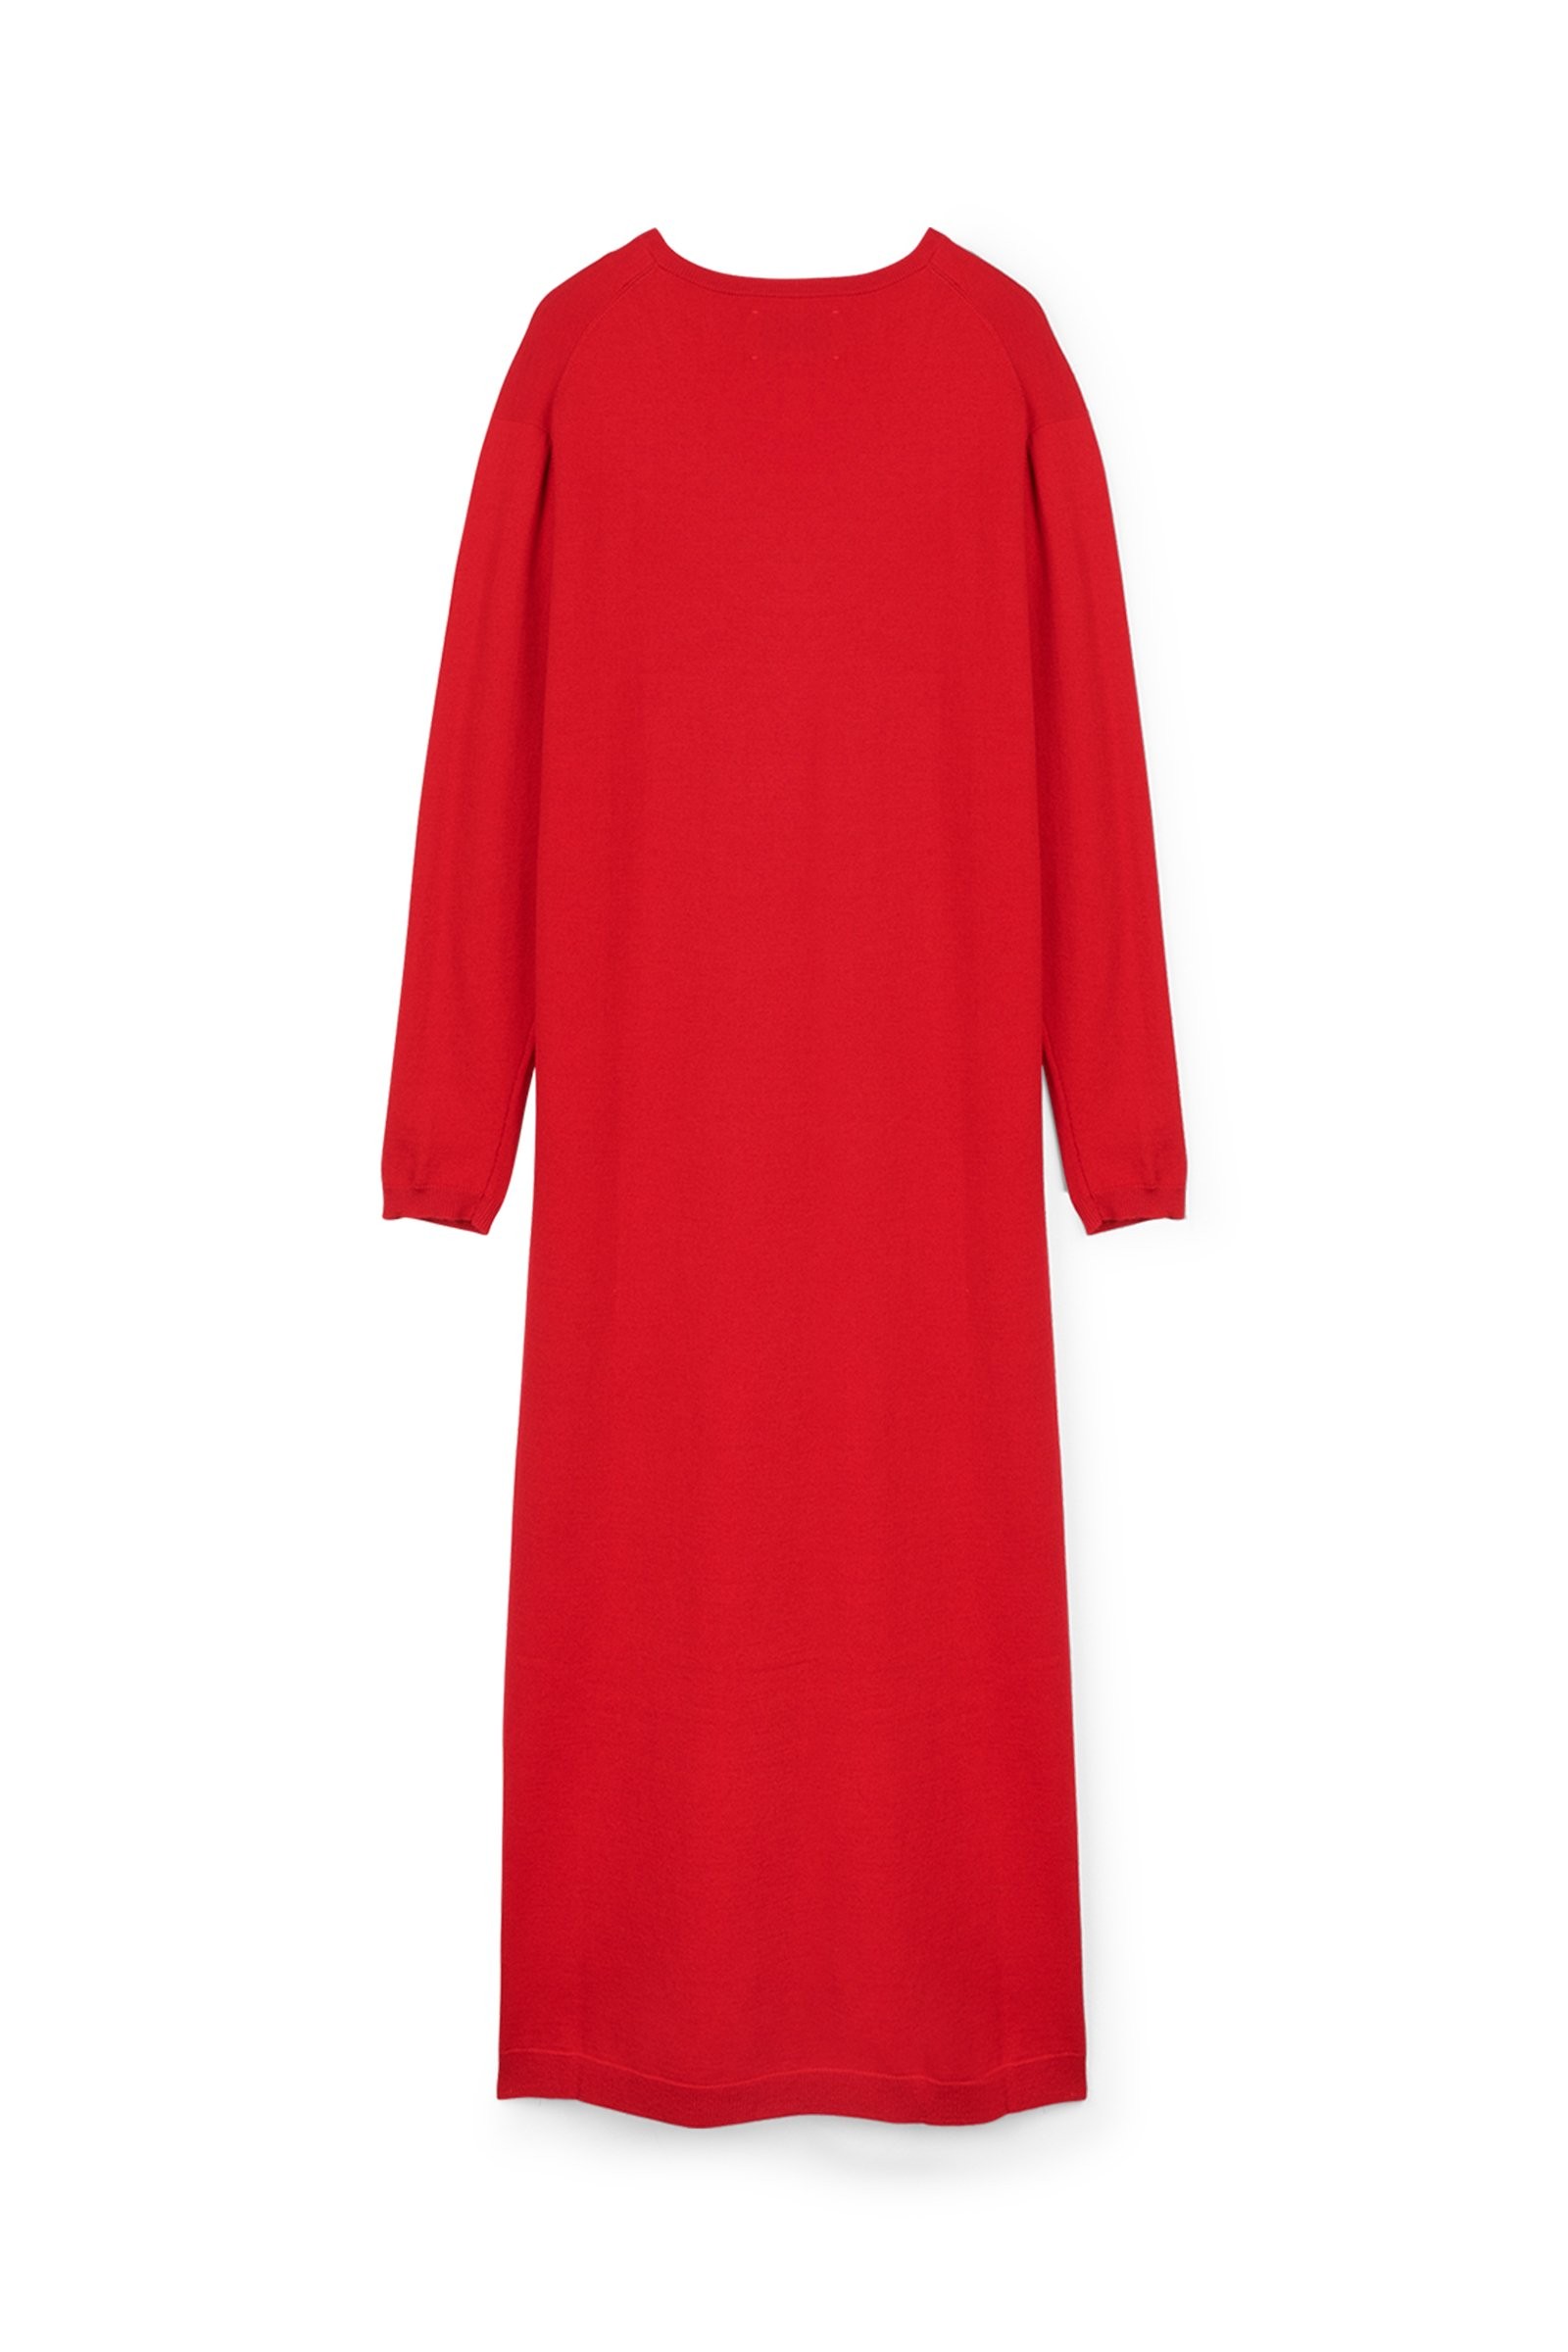 CKS Dames - PING - robe longue - rouge foncé